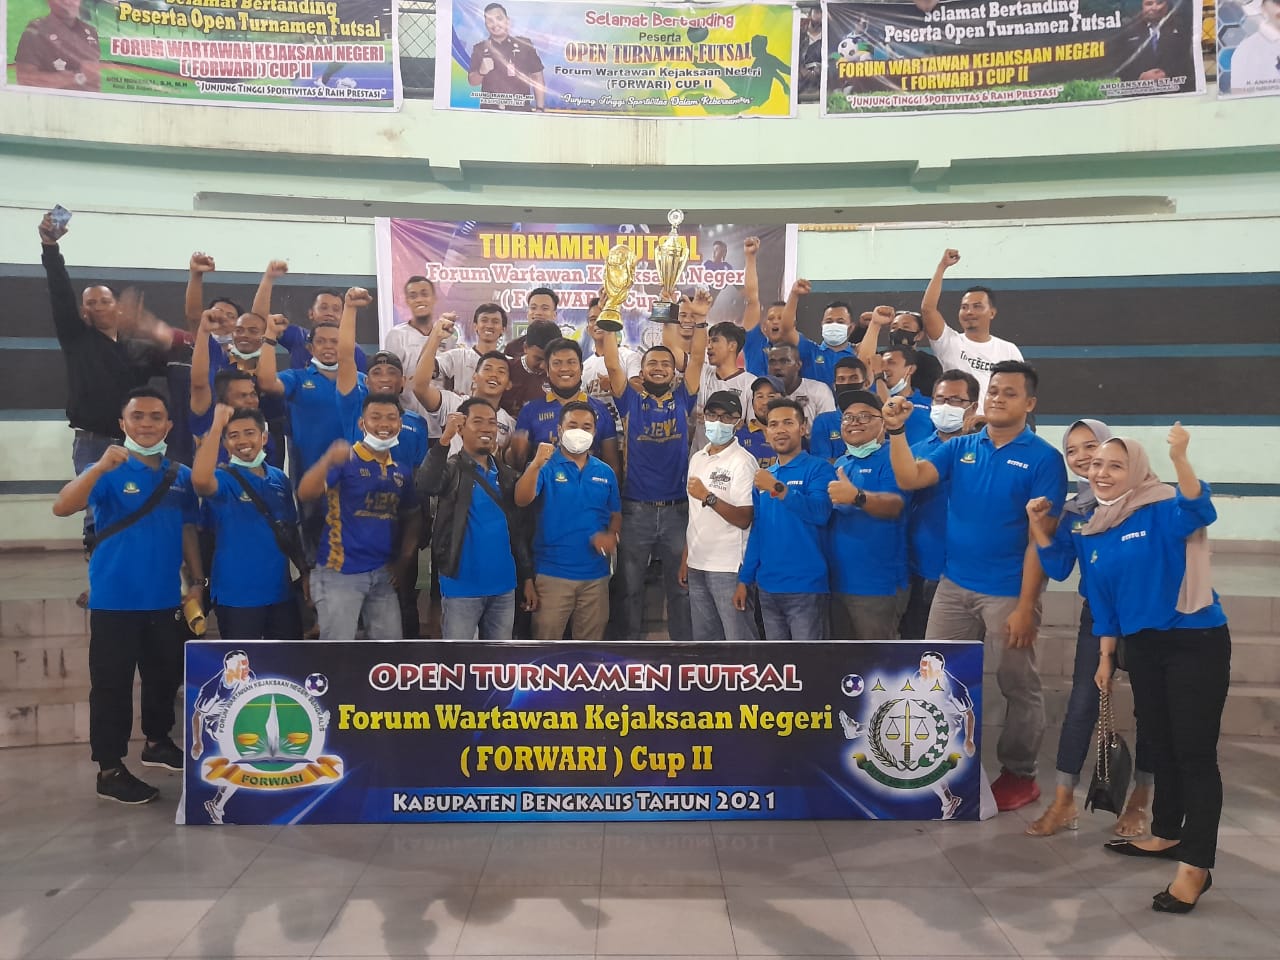 Menang Telak, Khalis A Juara Open Turnament Futsal Forwari Cup II Bengkalis 2021 